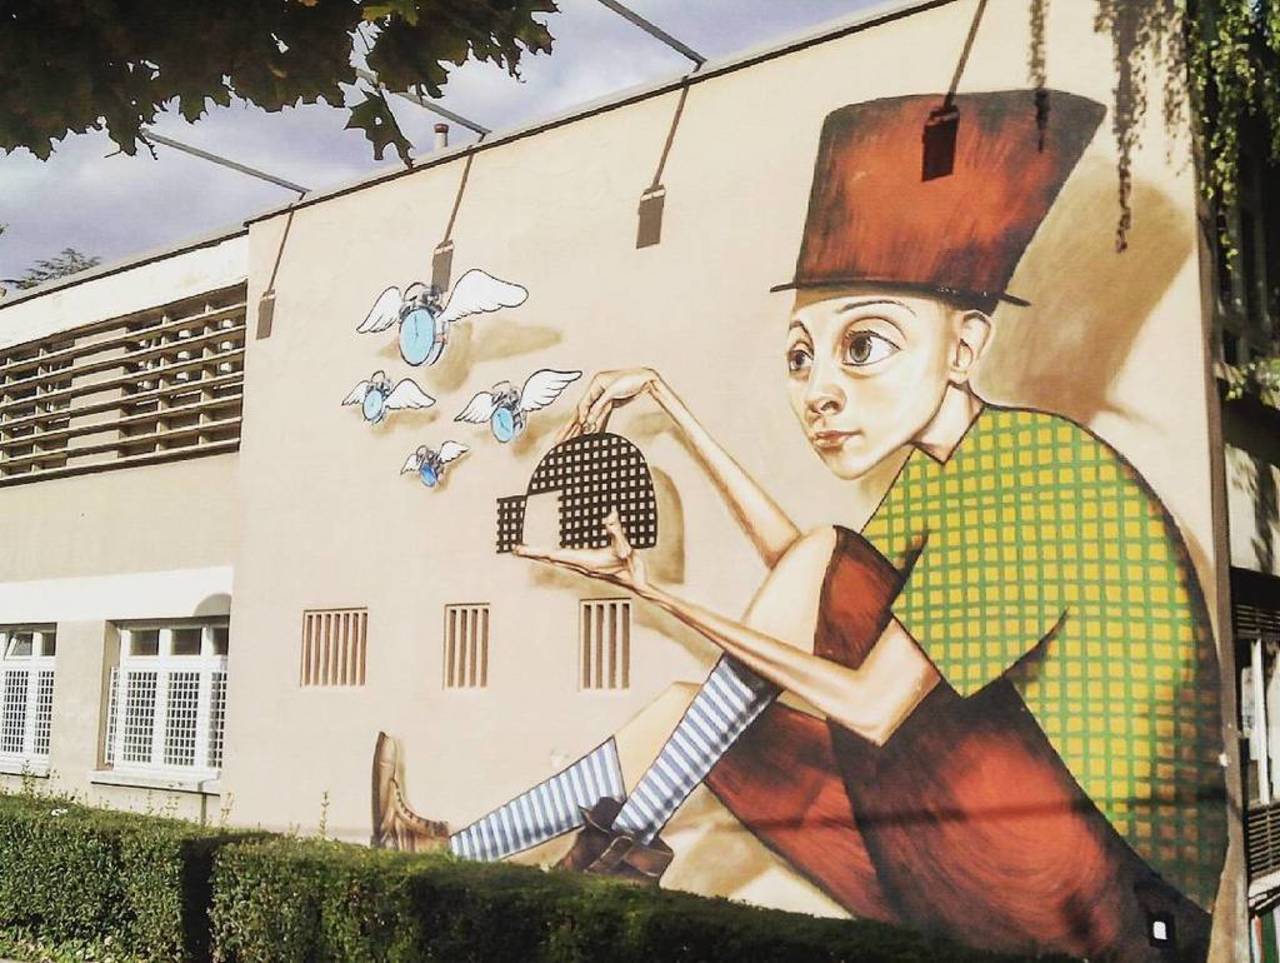 RT @artpushr: via #matealausic "http://bit.ly/1LXhNBb" #graffiti #streetart http://t.co/kekKIFBgNr